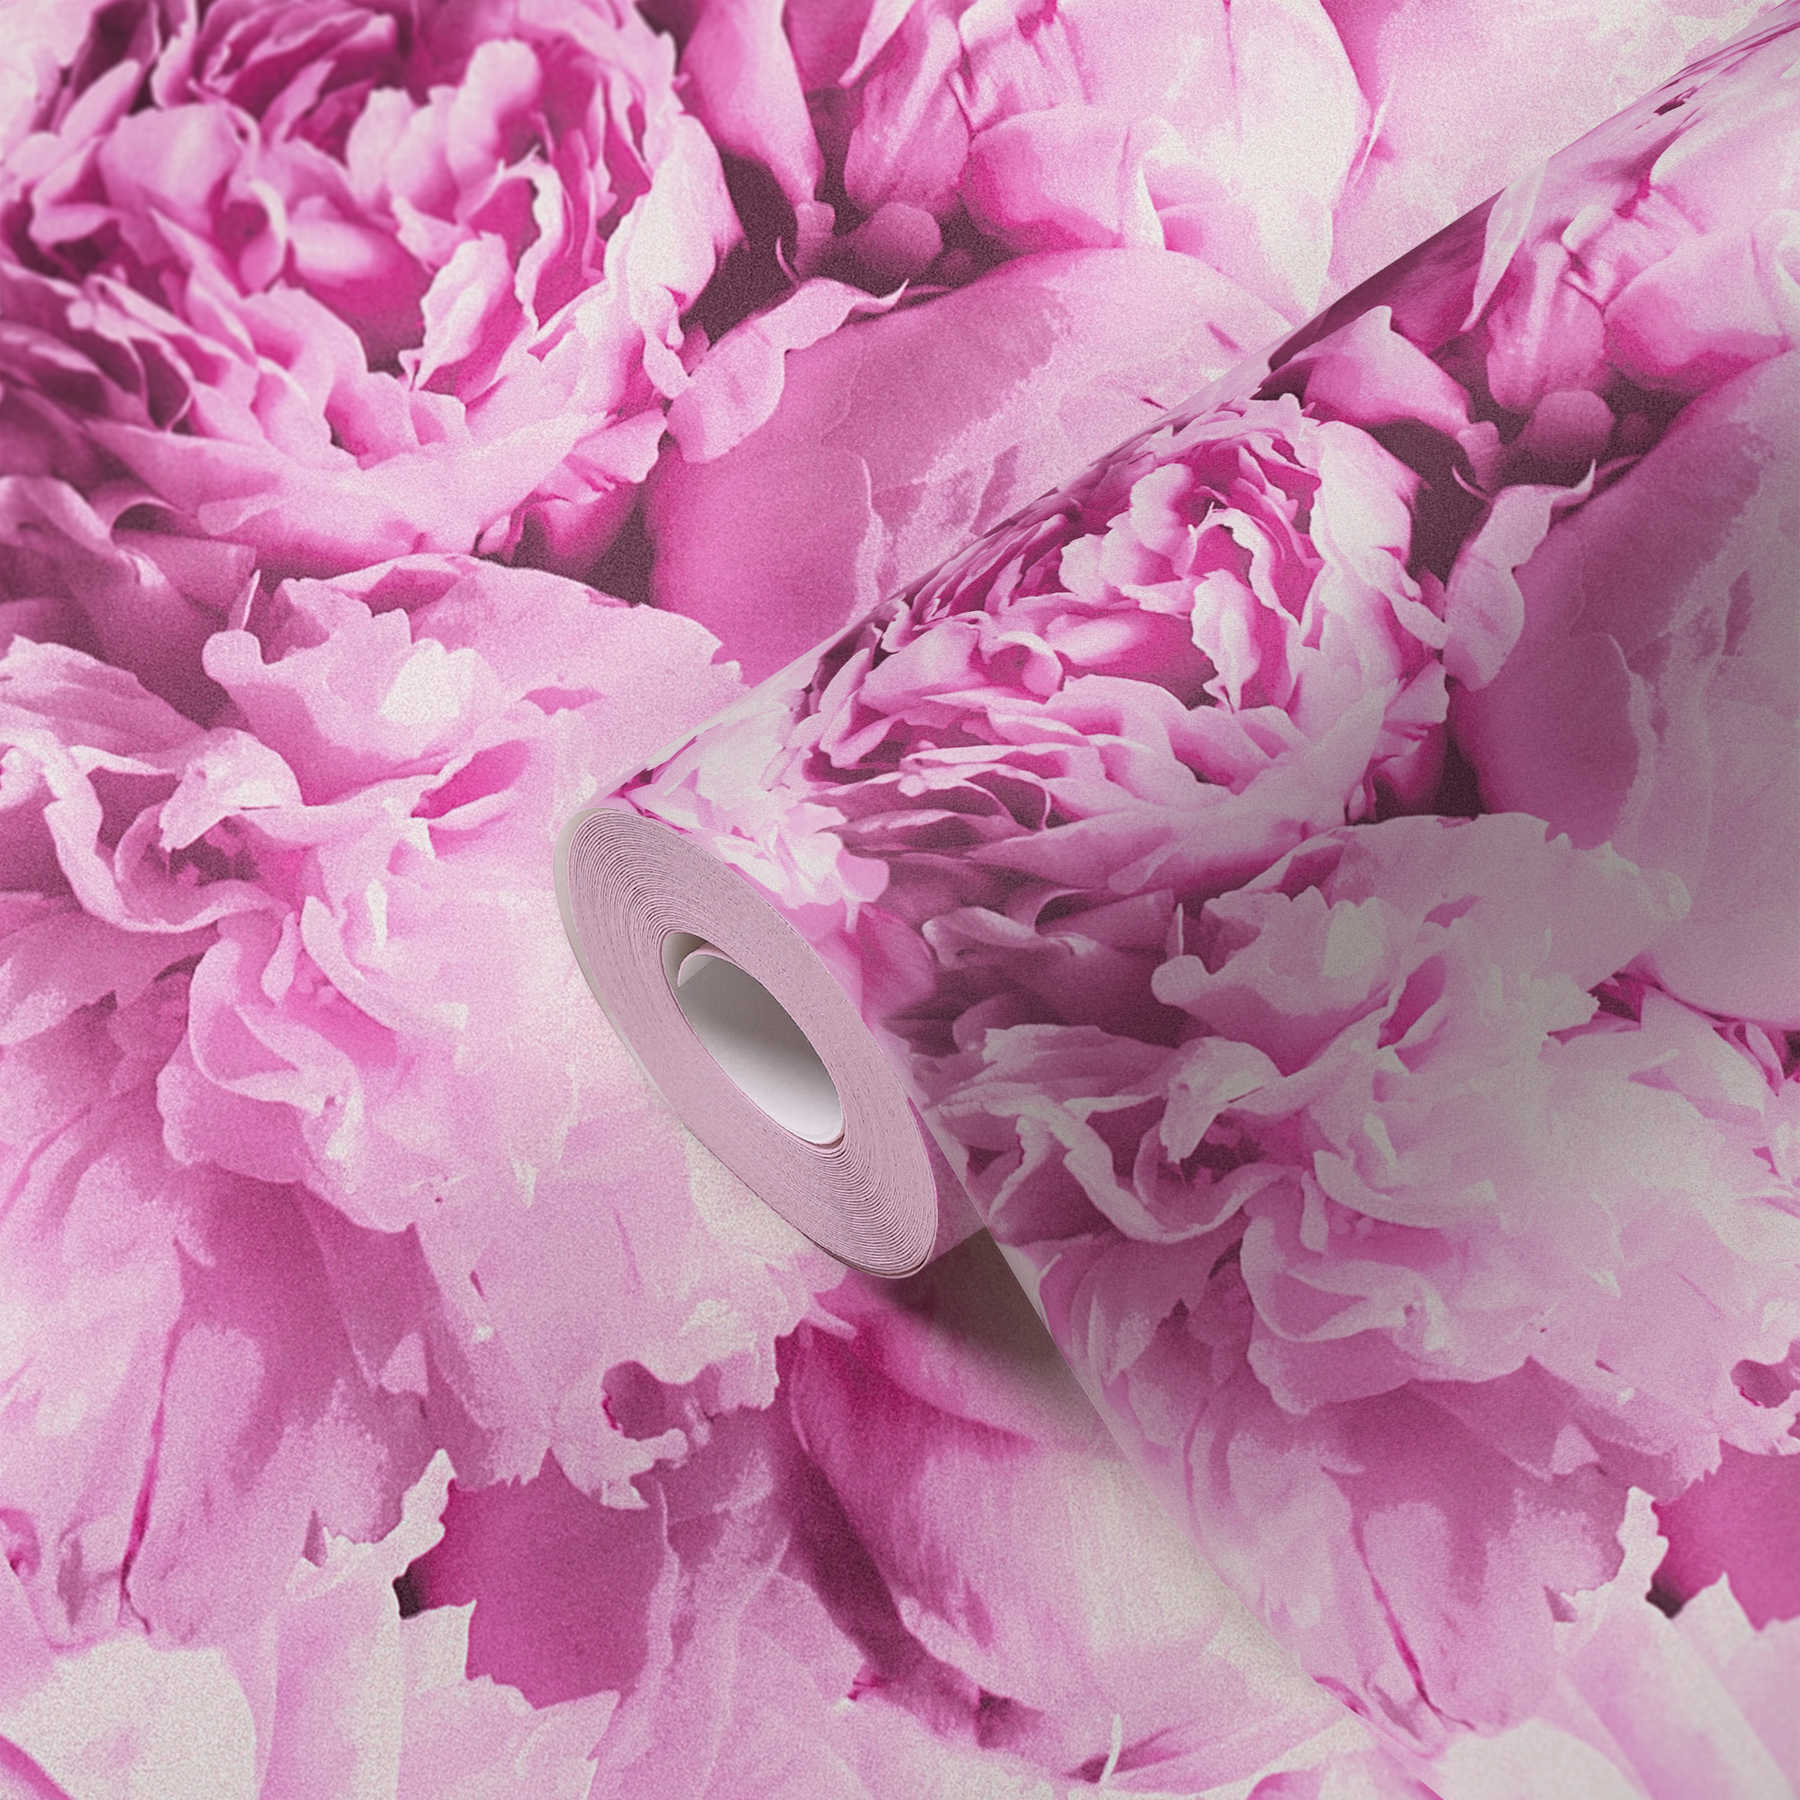             Bloemenbehang rozen met glanseffect - roze
        